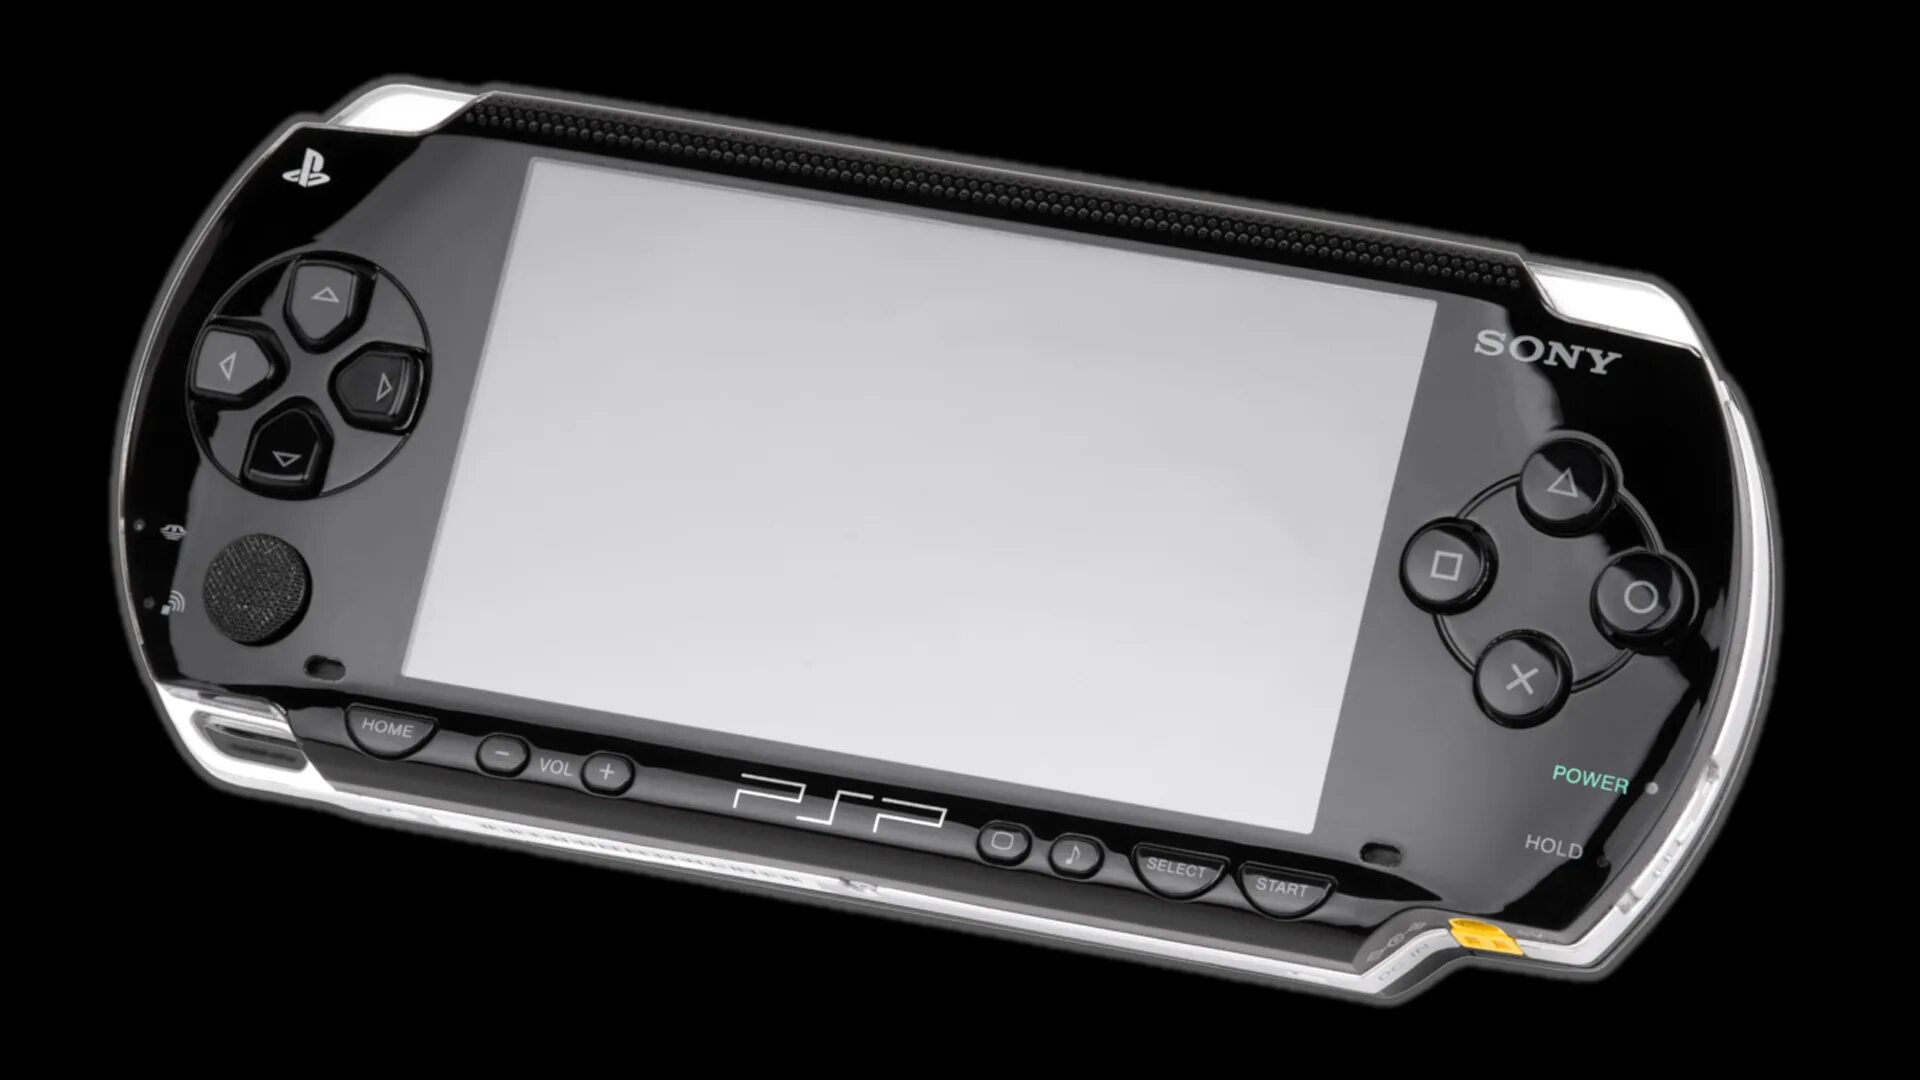 Sony PLAYSTATION Portable (PSP-1008). Sony PLAYSTATION Portable 3008. Sony PSP Vita 2020. Sony PLAYSTATION Portable Slim & Lite PSP-3000. Psp vk